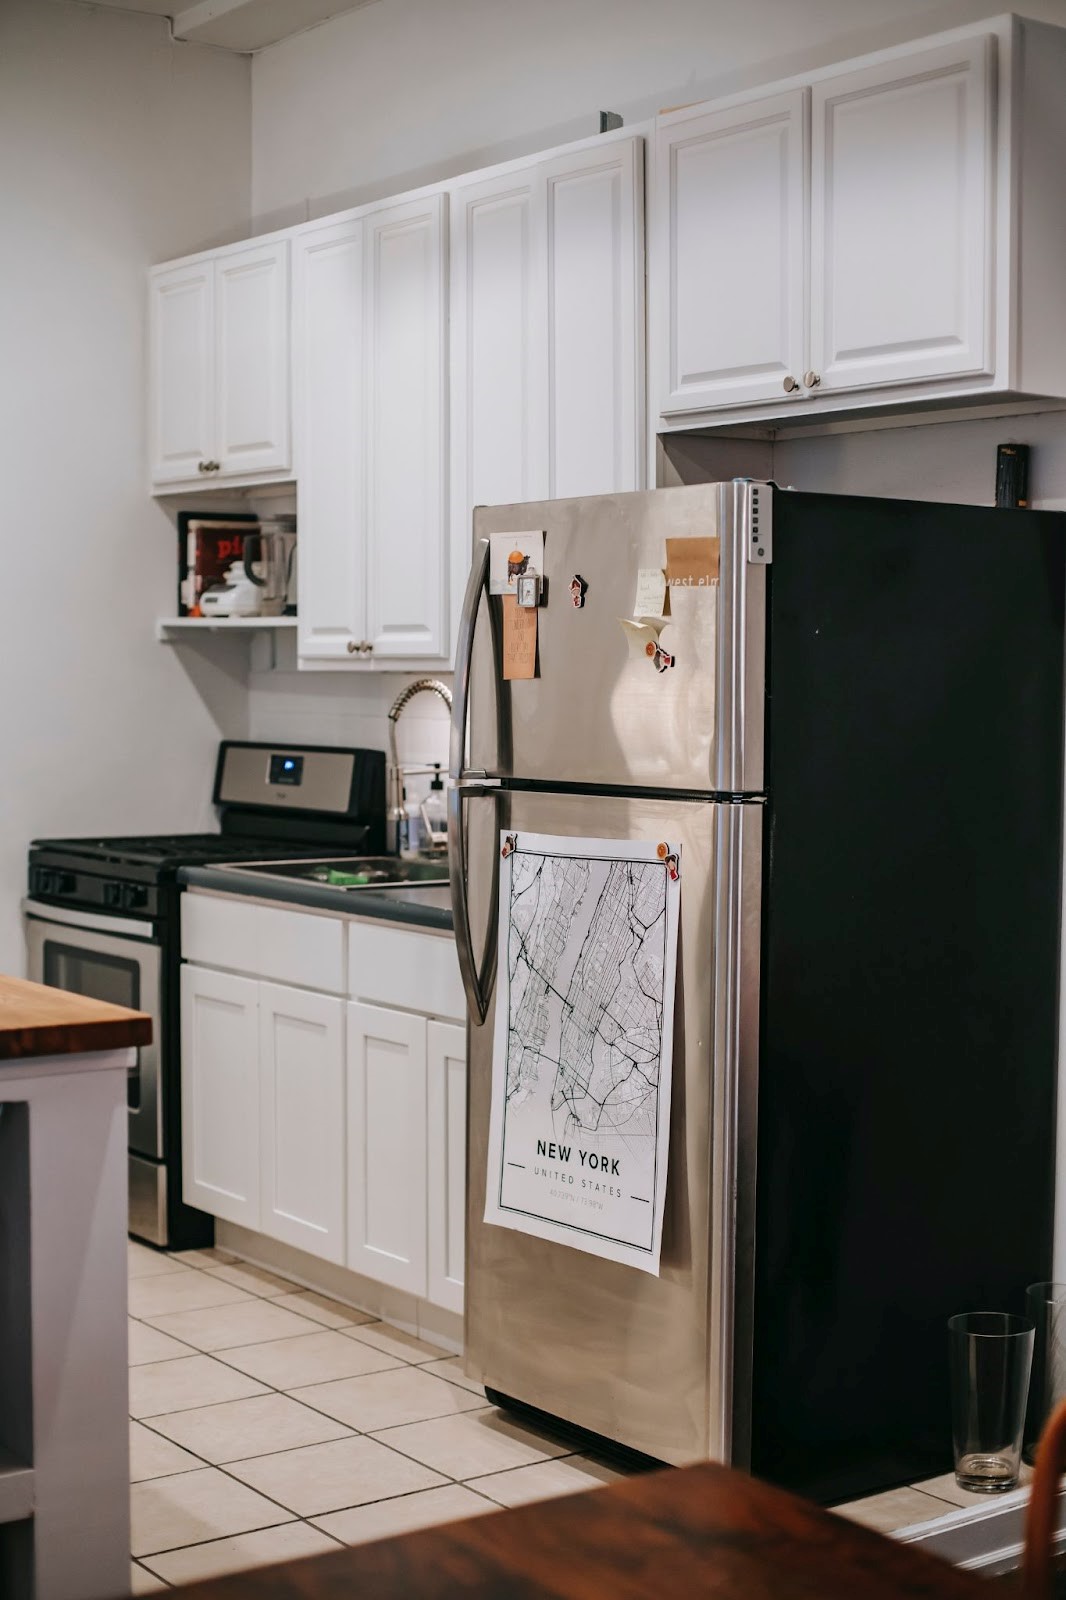 Schone koelkast op de juiste temperatuur in de keuken | Welhof NL